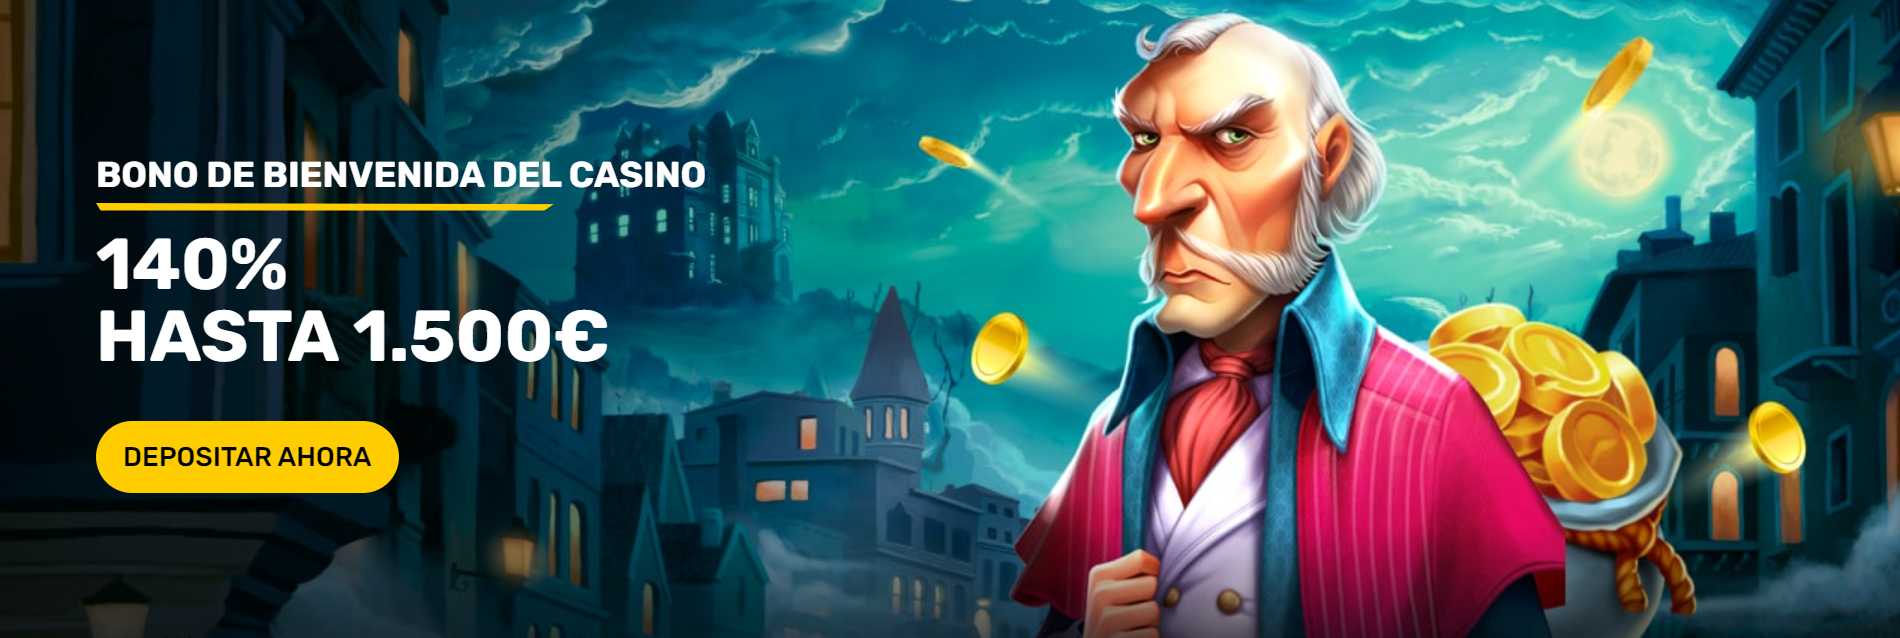 Bono de bienvenida Campeónbet Casino